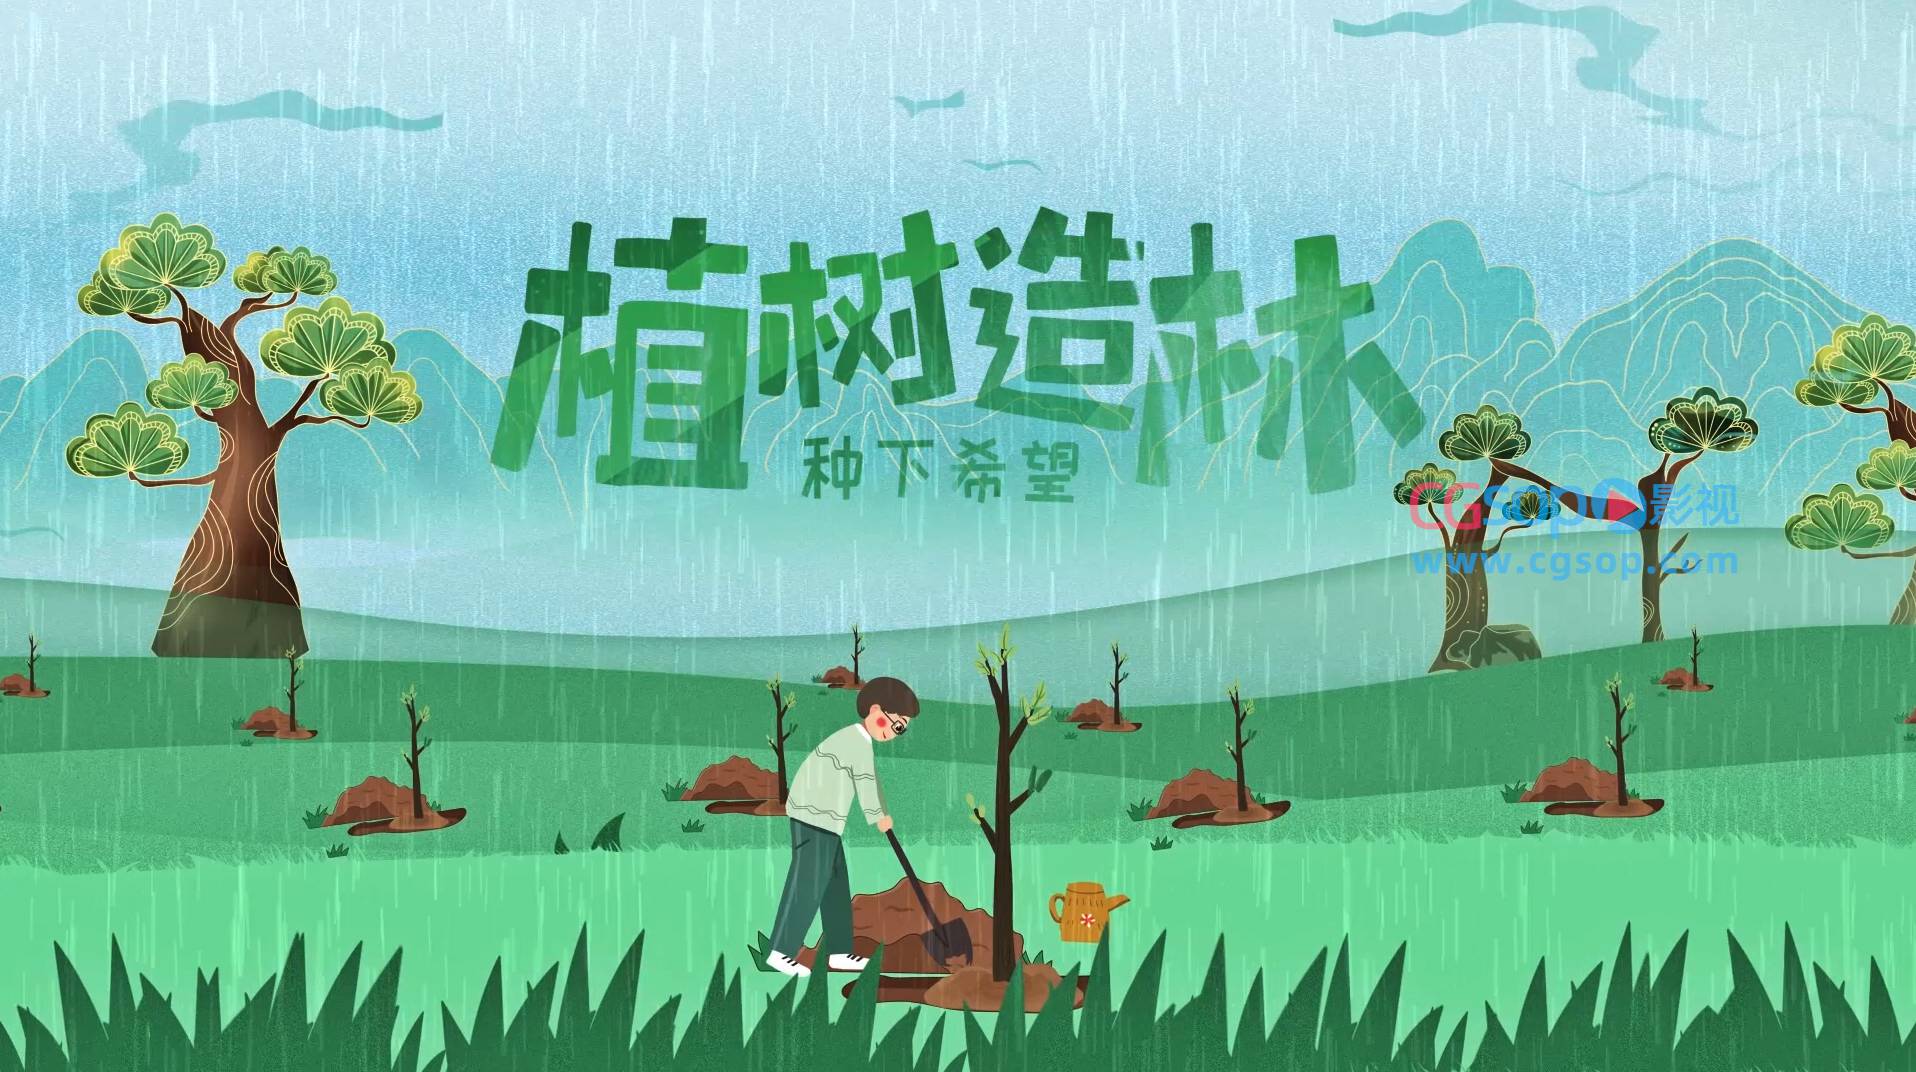 中国植树节312公益绿色环保宣传AE模板